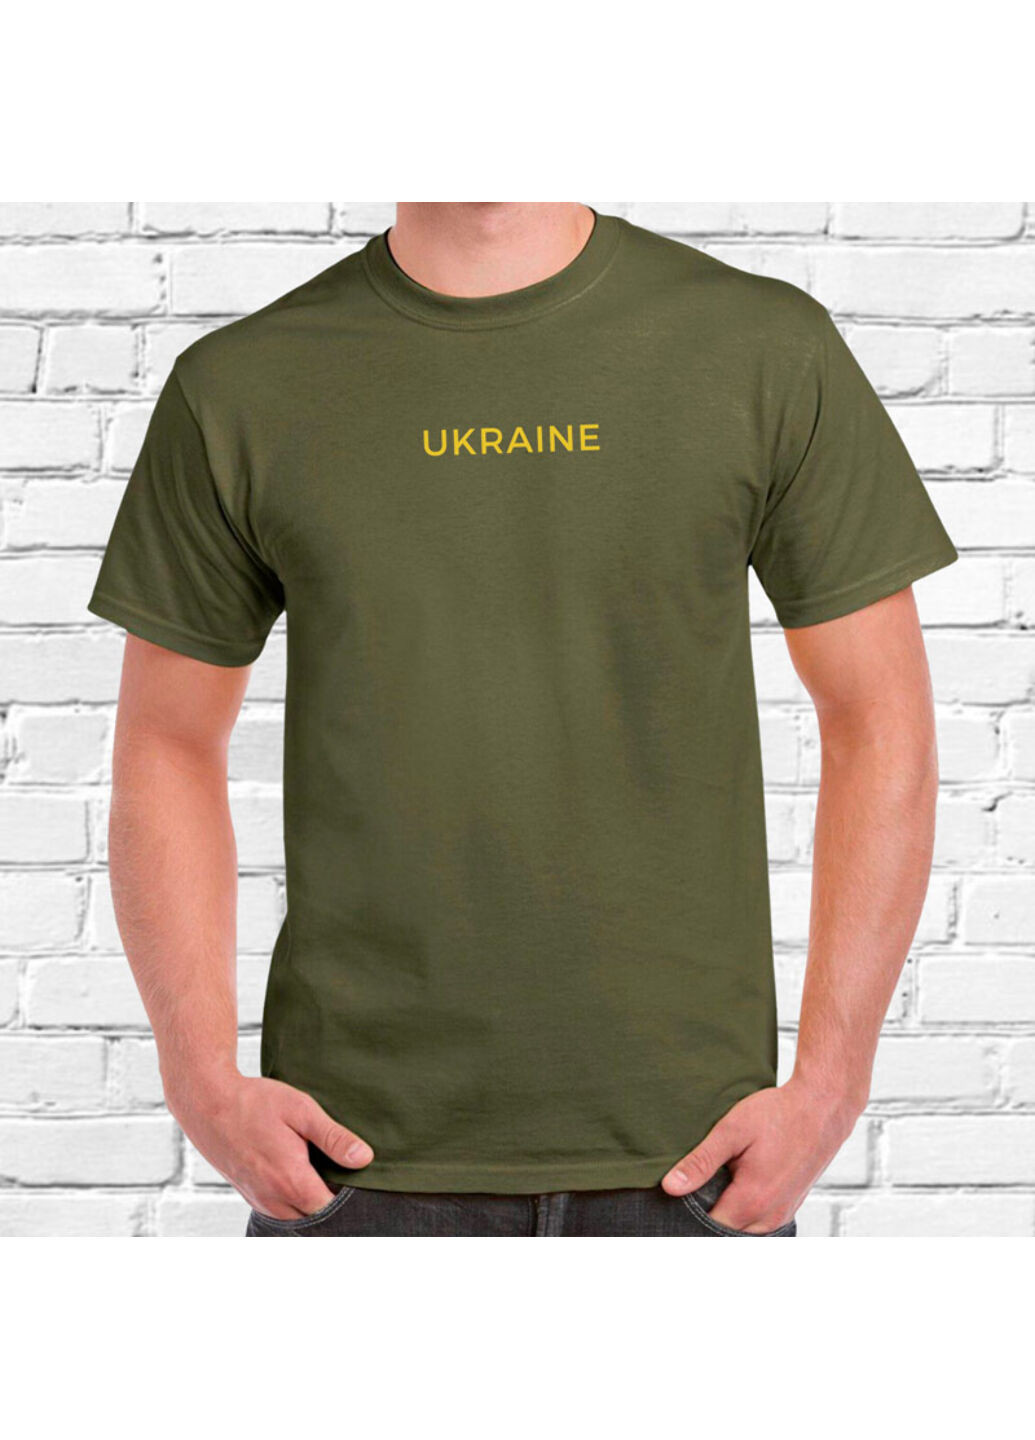 Хакі (оливкова) футболка з злотою вишивкою ukraine чоловіча millytary green 2xl No Brand